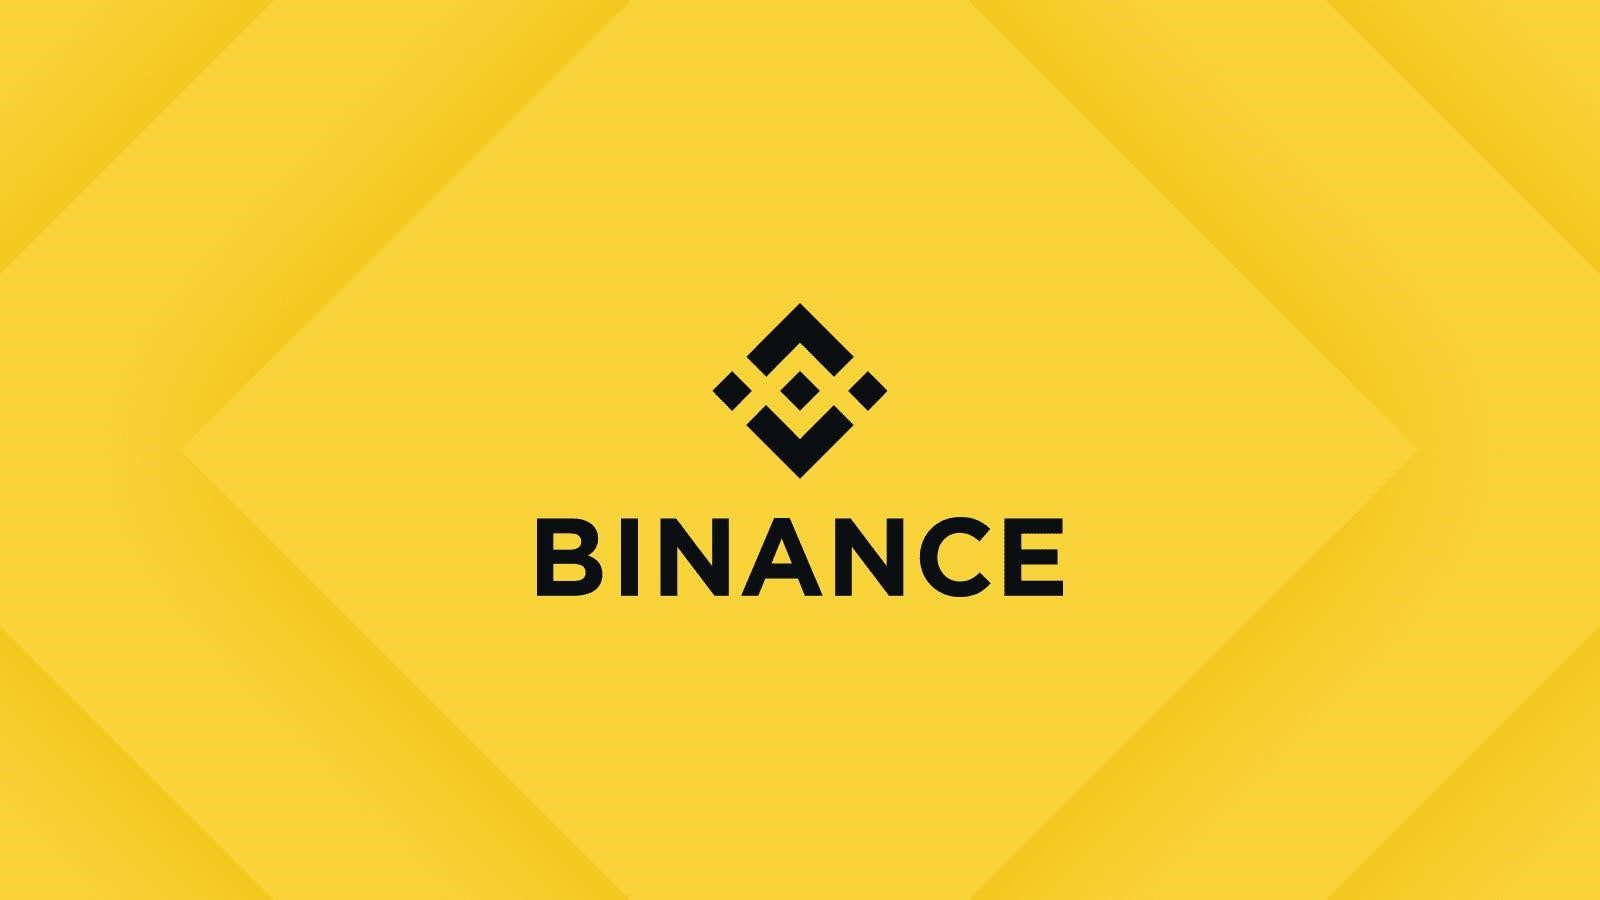 Binance là một trong những sàn giao dịch crypto hàng đầu trên thế giới, với đa dạng các loại tiền điện tử và công nghệ giao dịch tiên tiến, thu hút sự quan tâm của nhiều nhà đầu tư và người dùng.